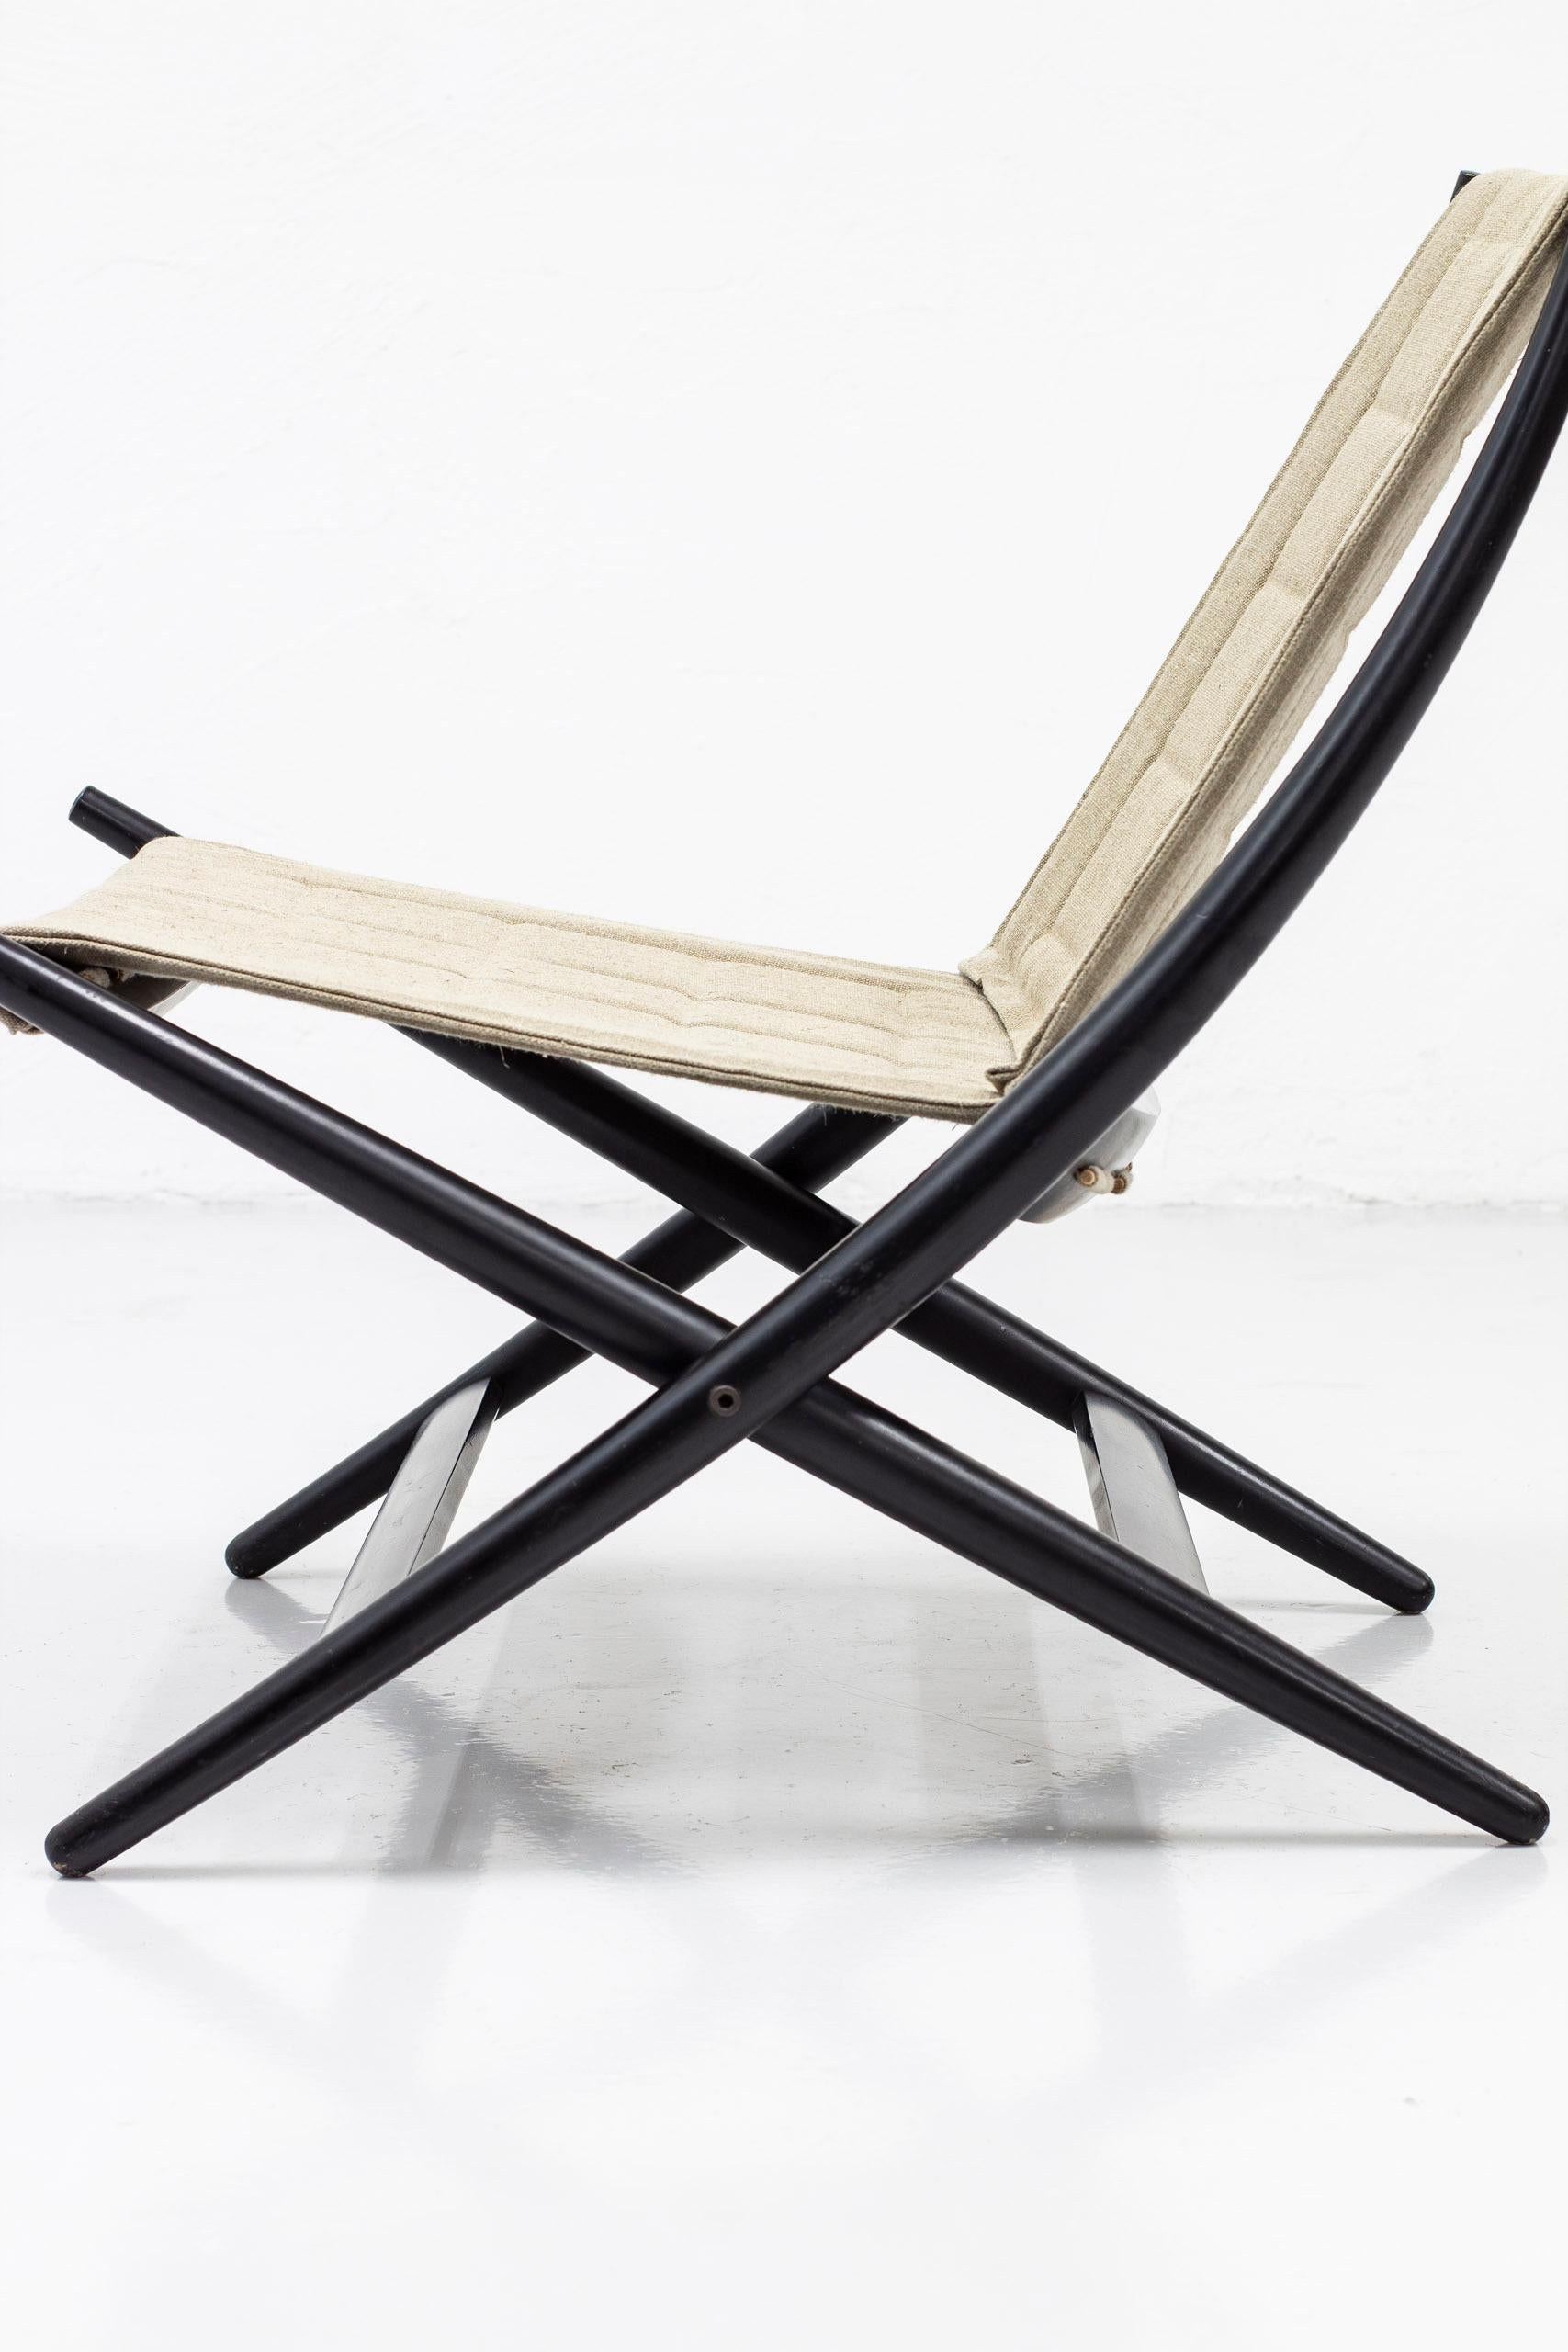 Scandinavian Modern Danish Modern Folding Chair by John Hagen and Cabinetmaker I Christiansen